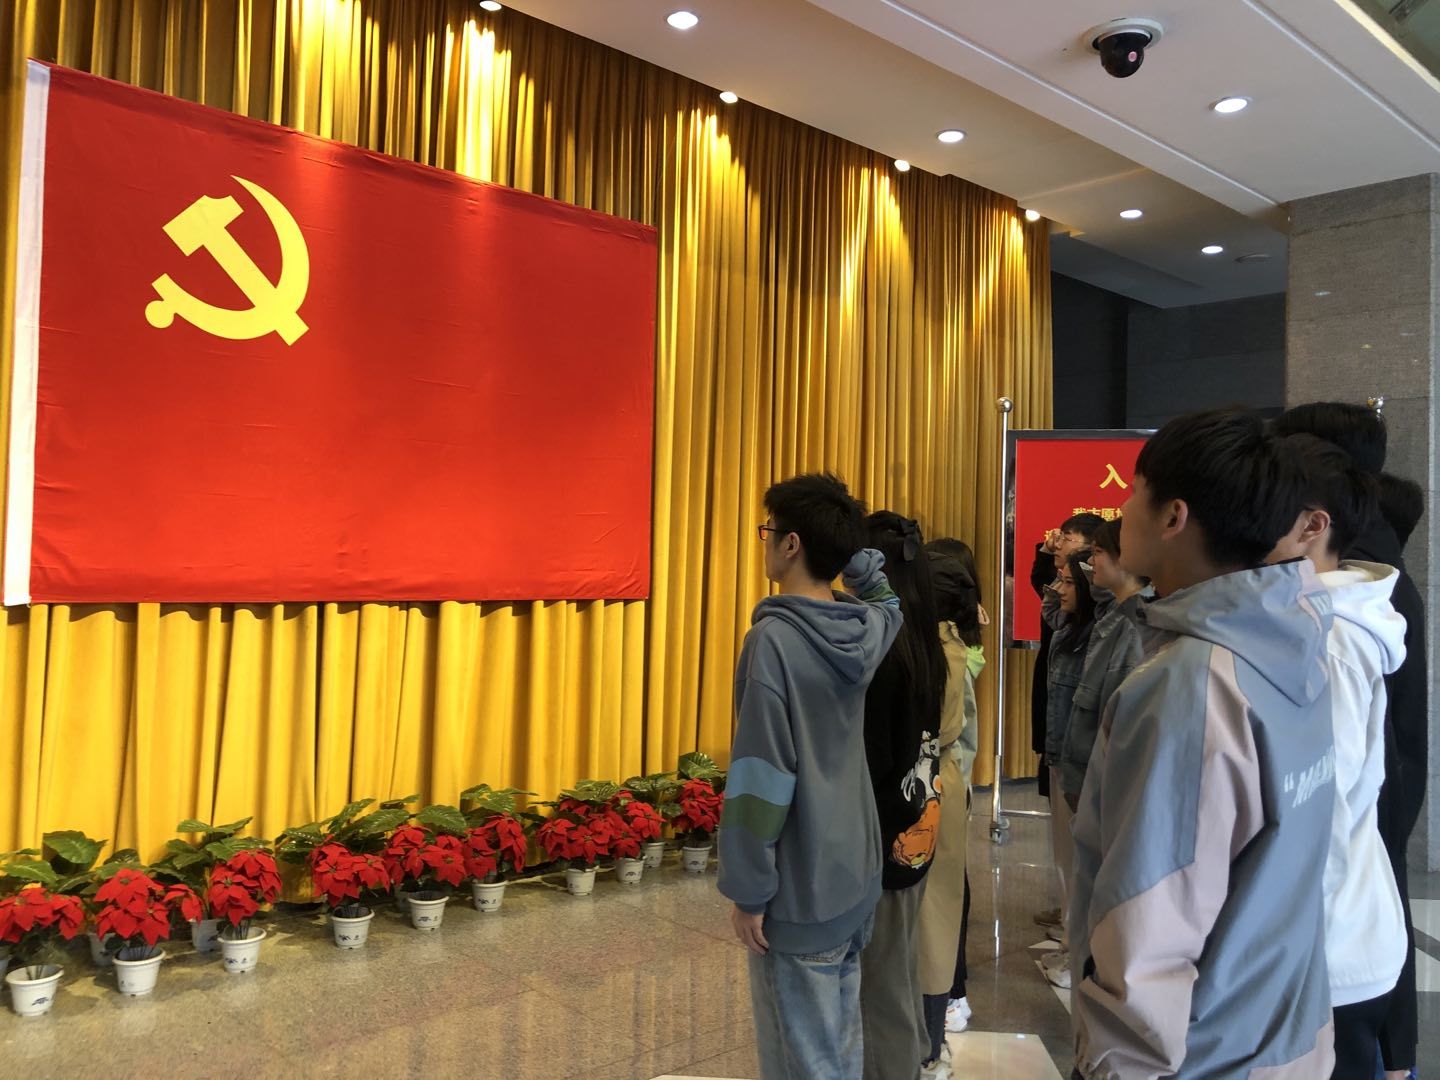 柳州红色纪念馆图片